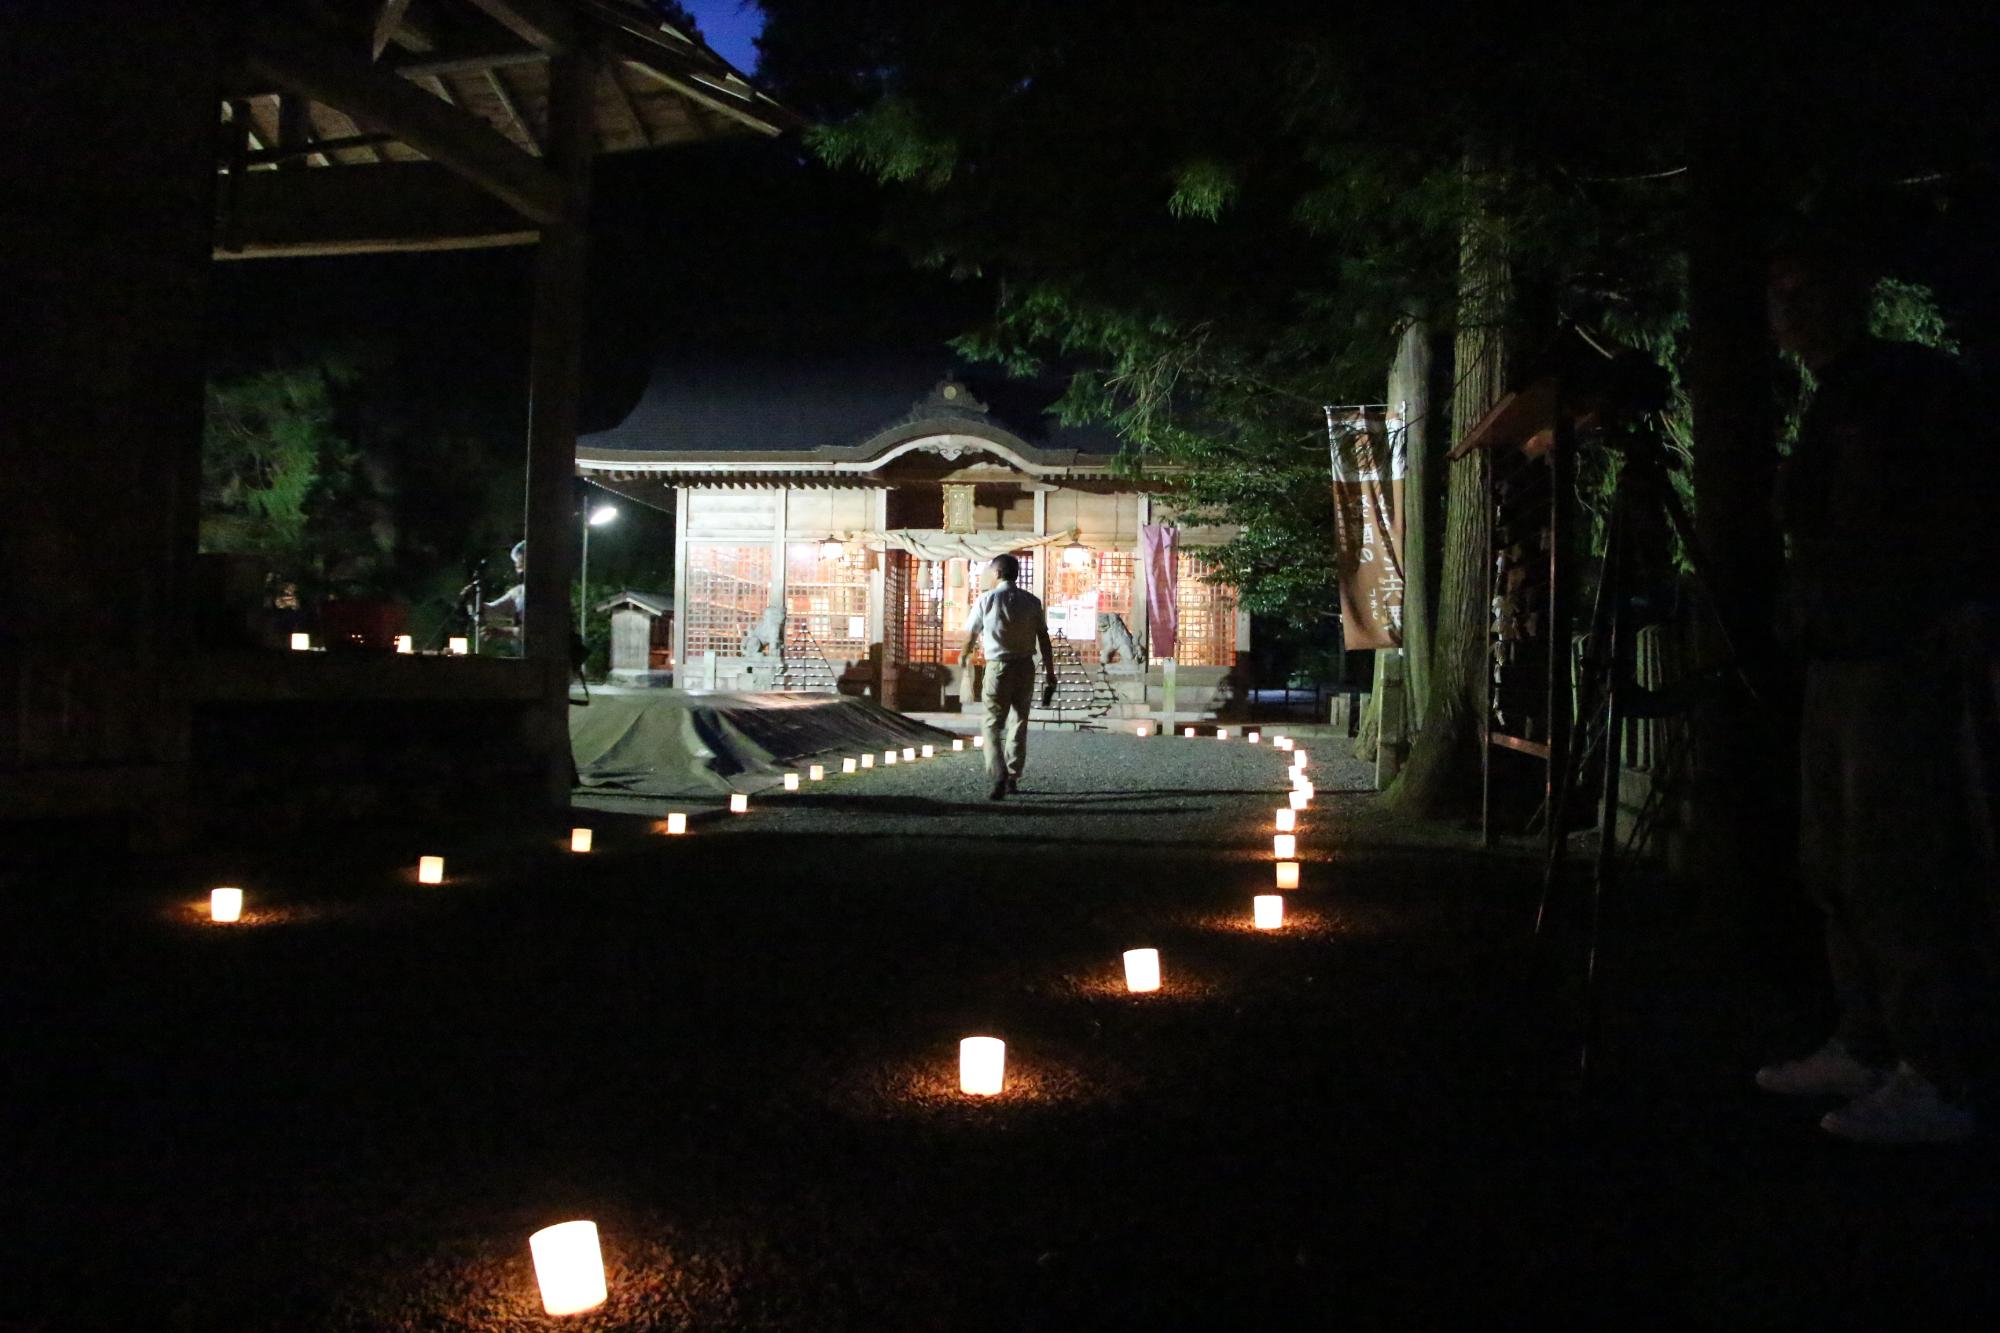 庭田神社本殿までの参道の両脇に灯明が並び神社を幻想的に照らしている写真